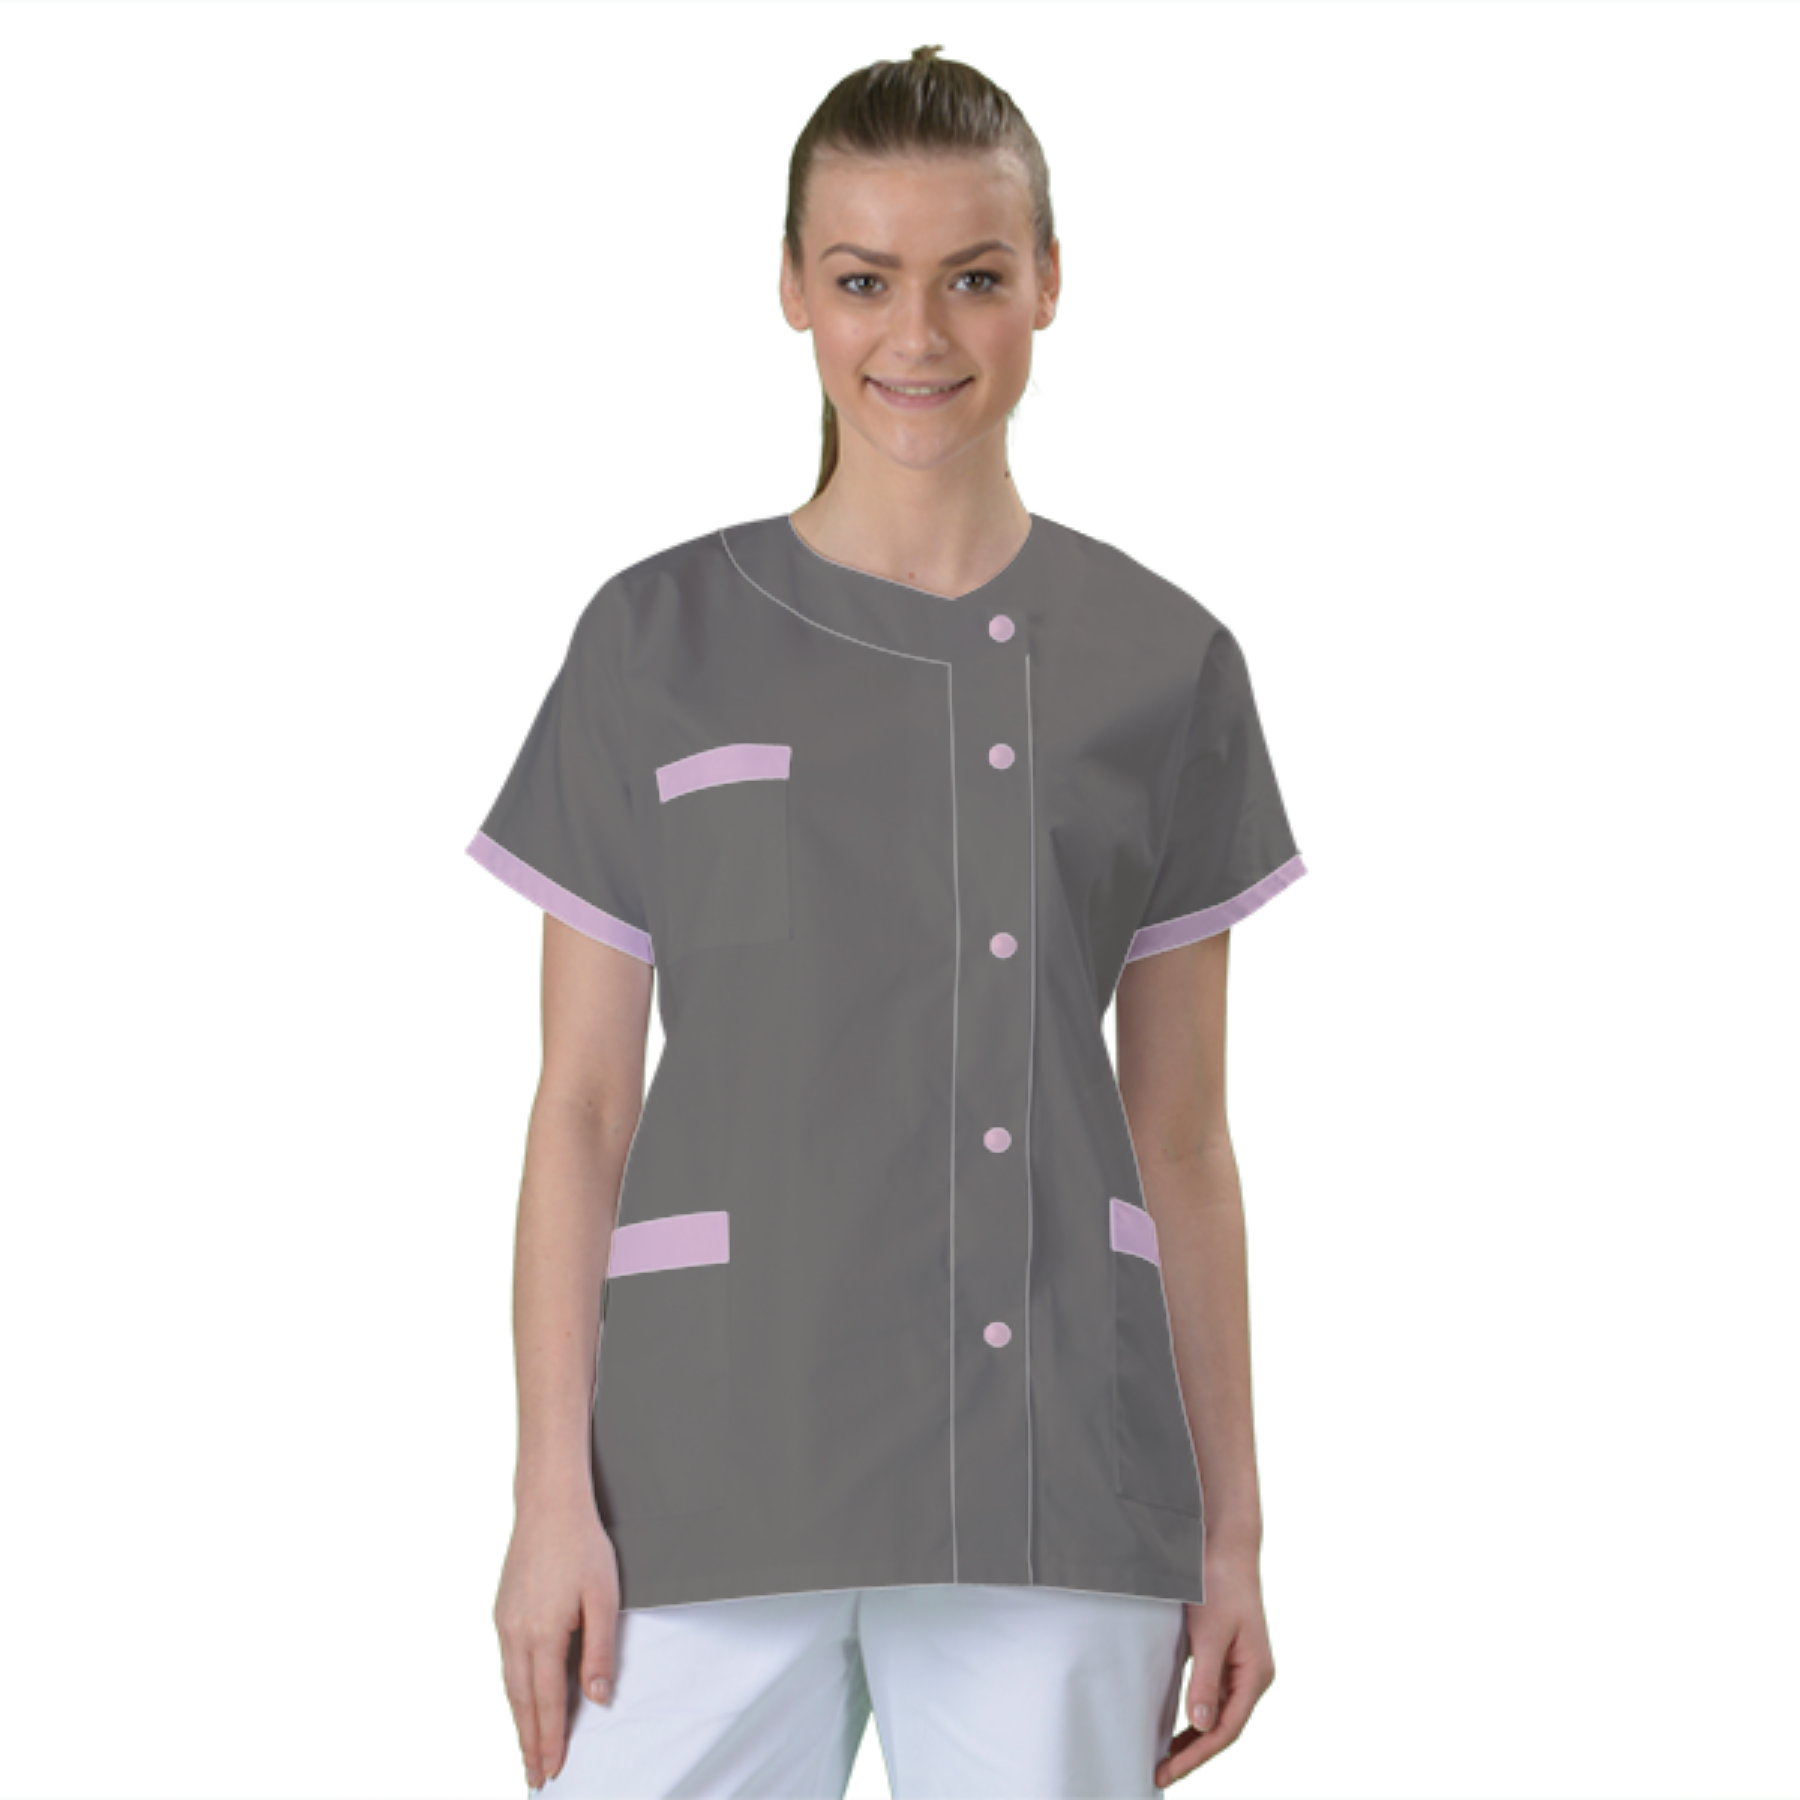 blouse-de-travail-personnalisee-tunique-medicale acheté - par Mariyamou - le 22-02-2023